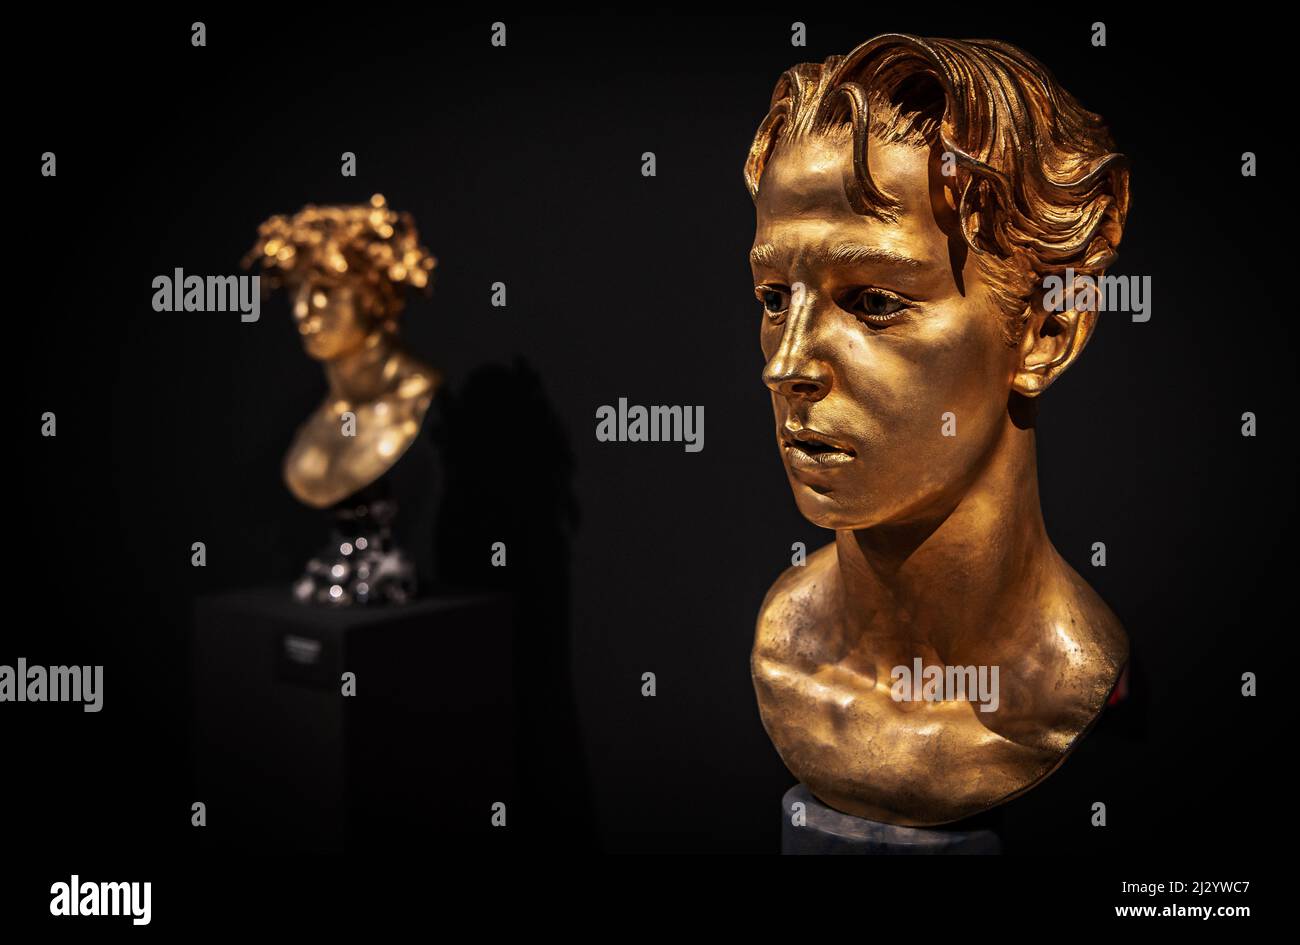 Âge d'or 4 - sculpture en bronze de l'artiste Livio Scarpella exposée au Musée d'art moderne et contemporain - MART - - Rovereto - Italie Banque D'Images